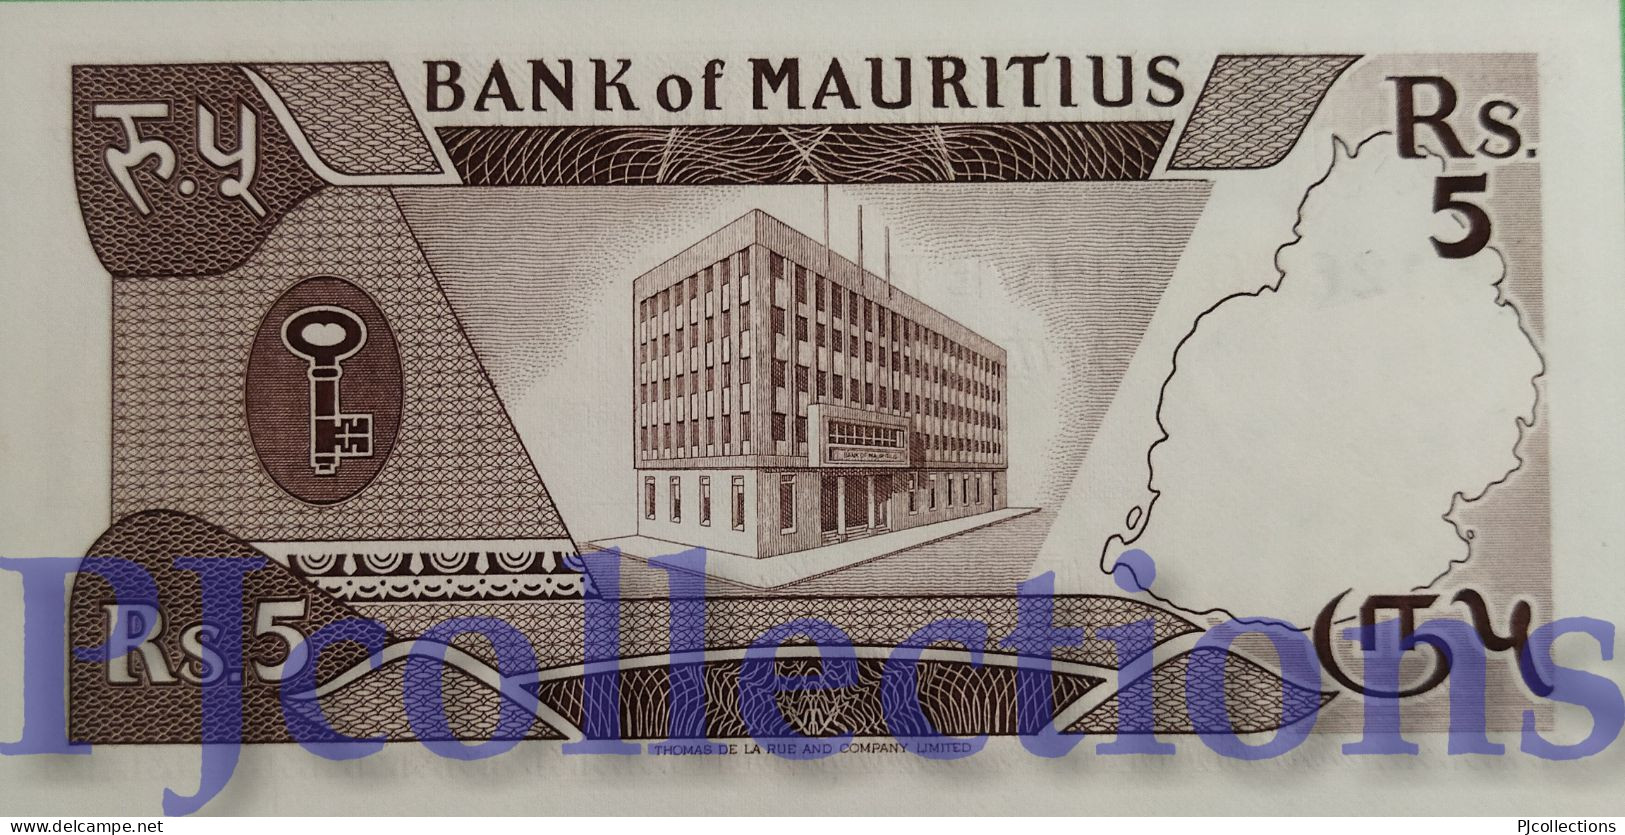 MAURITIUS 5 RUPEES 1985 PICK 34 UNC - Mauritius